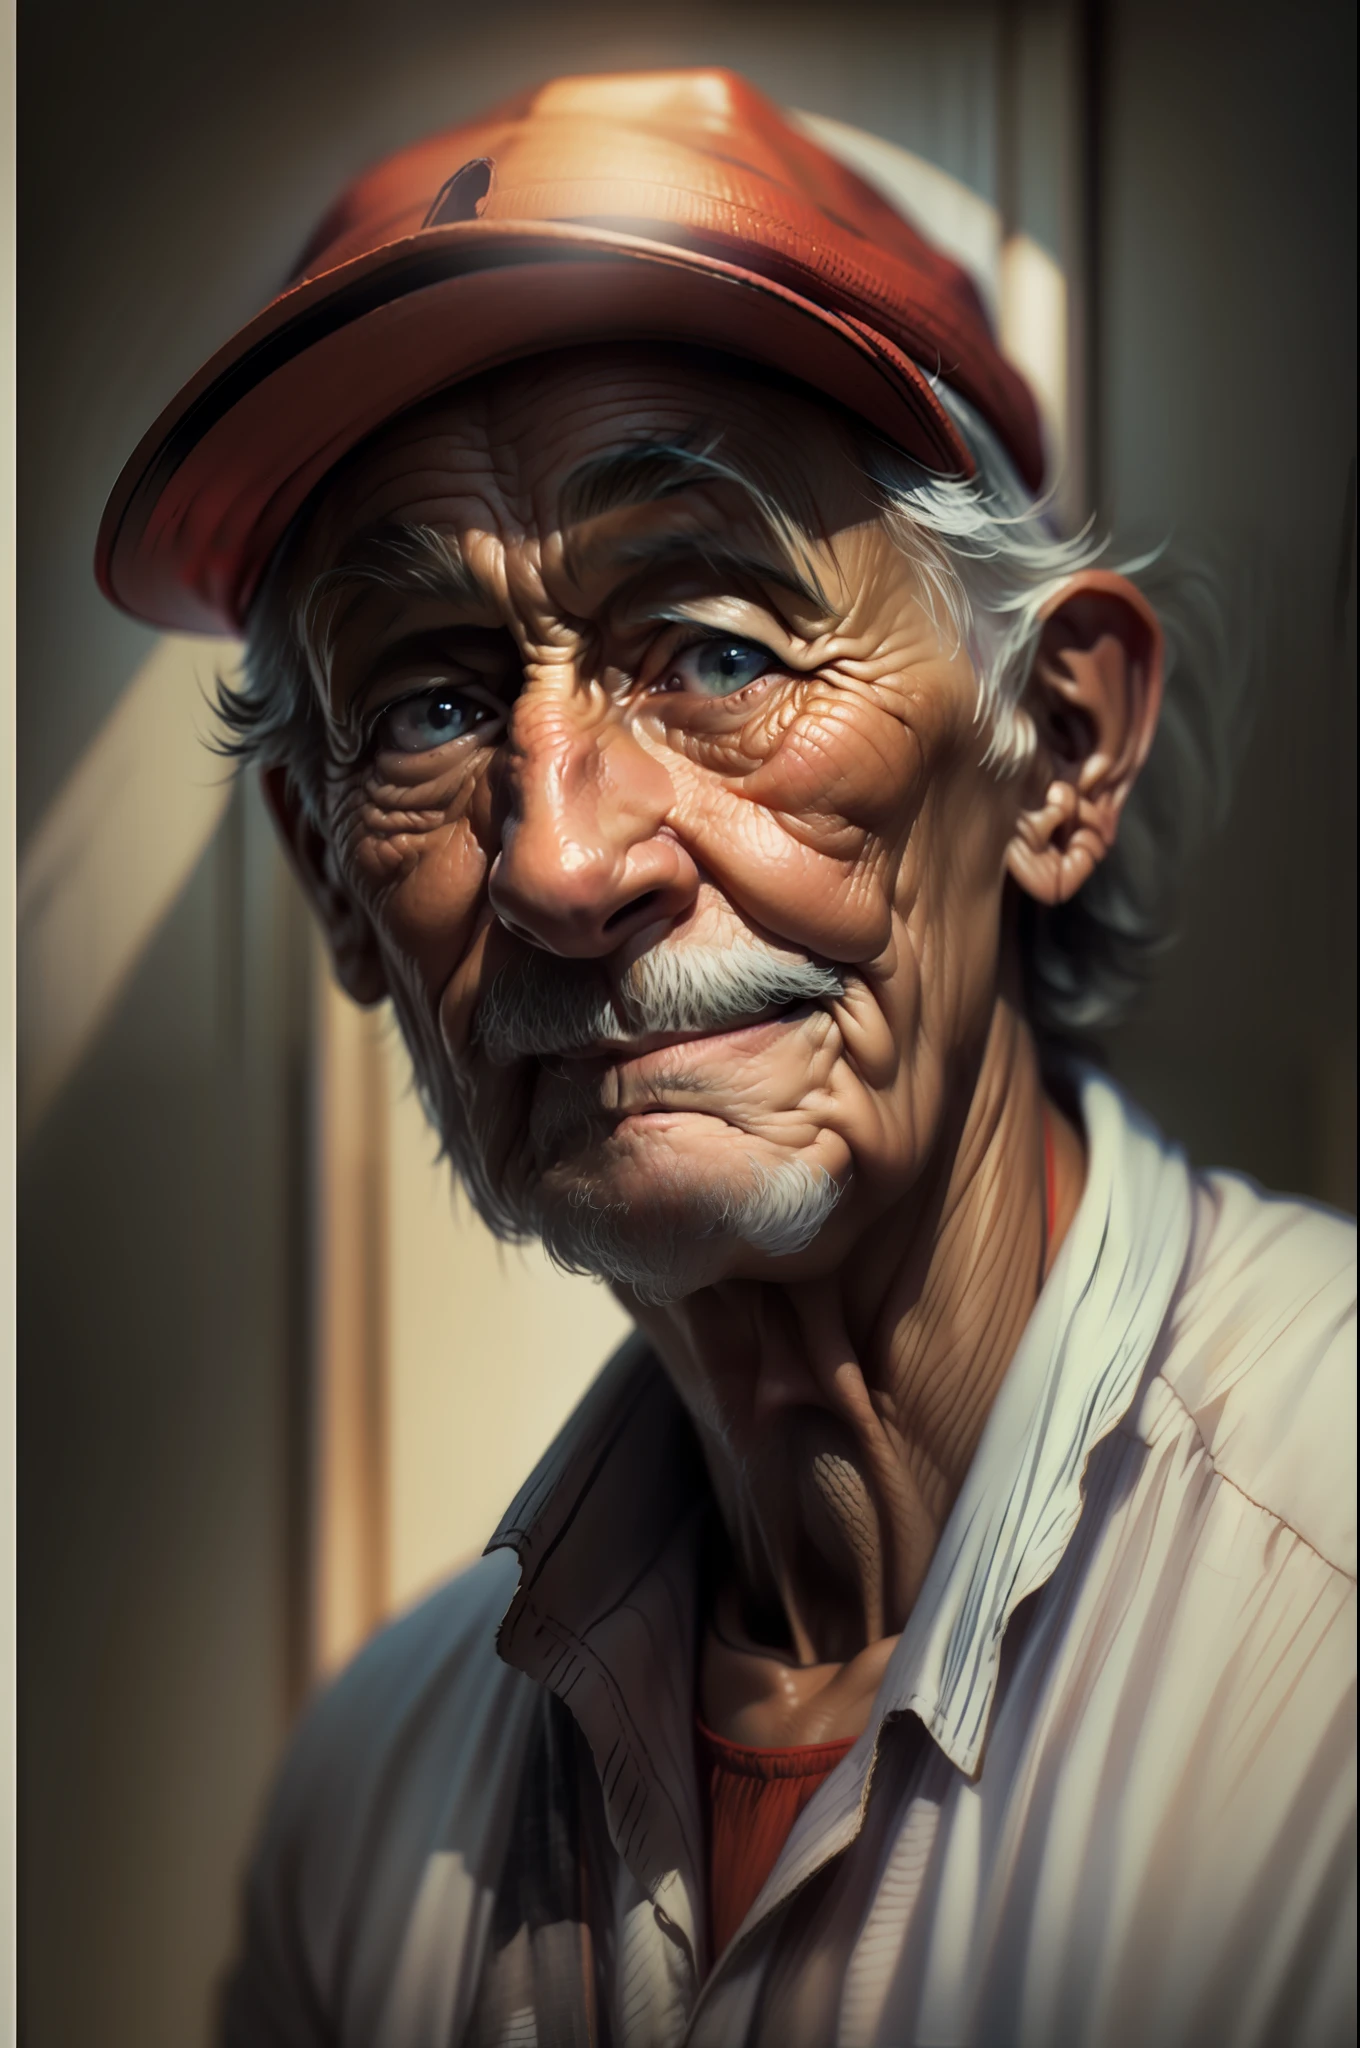 ((Obra de arte)), ((melhor qualidade)), Retrato colorido de um velho, Use um chapéu vermelho, olhos abertos, boato